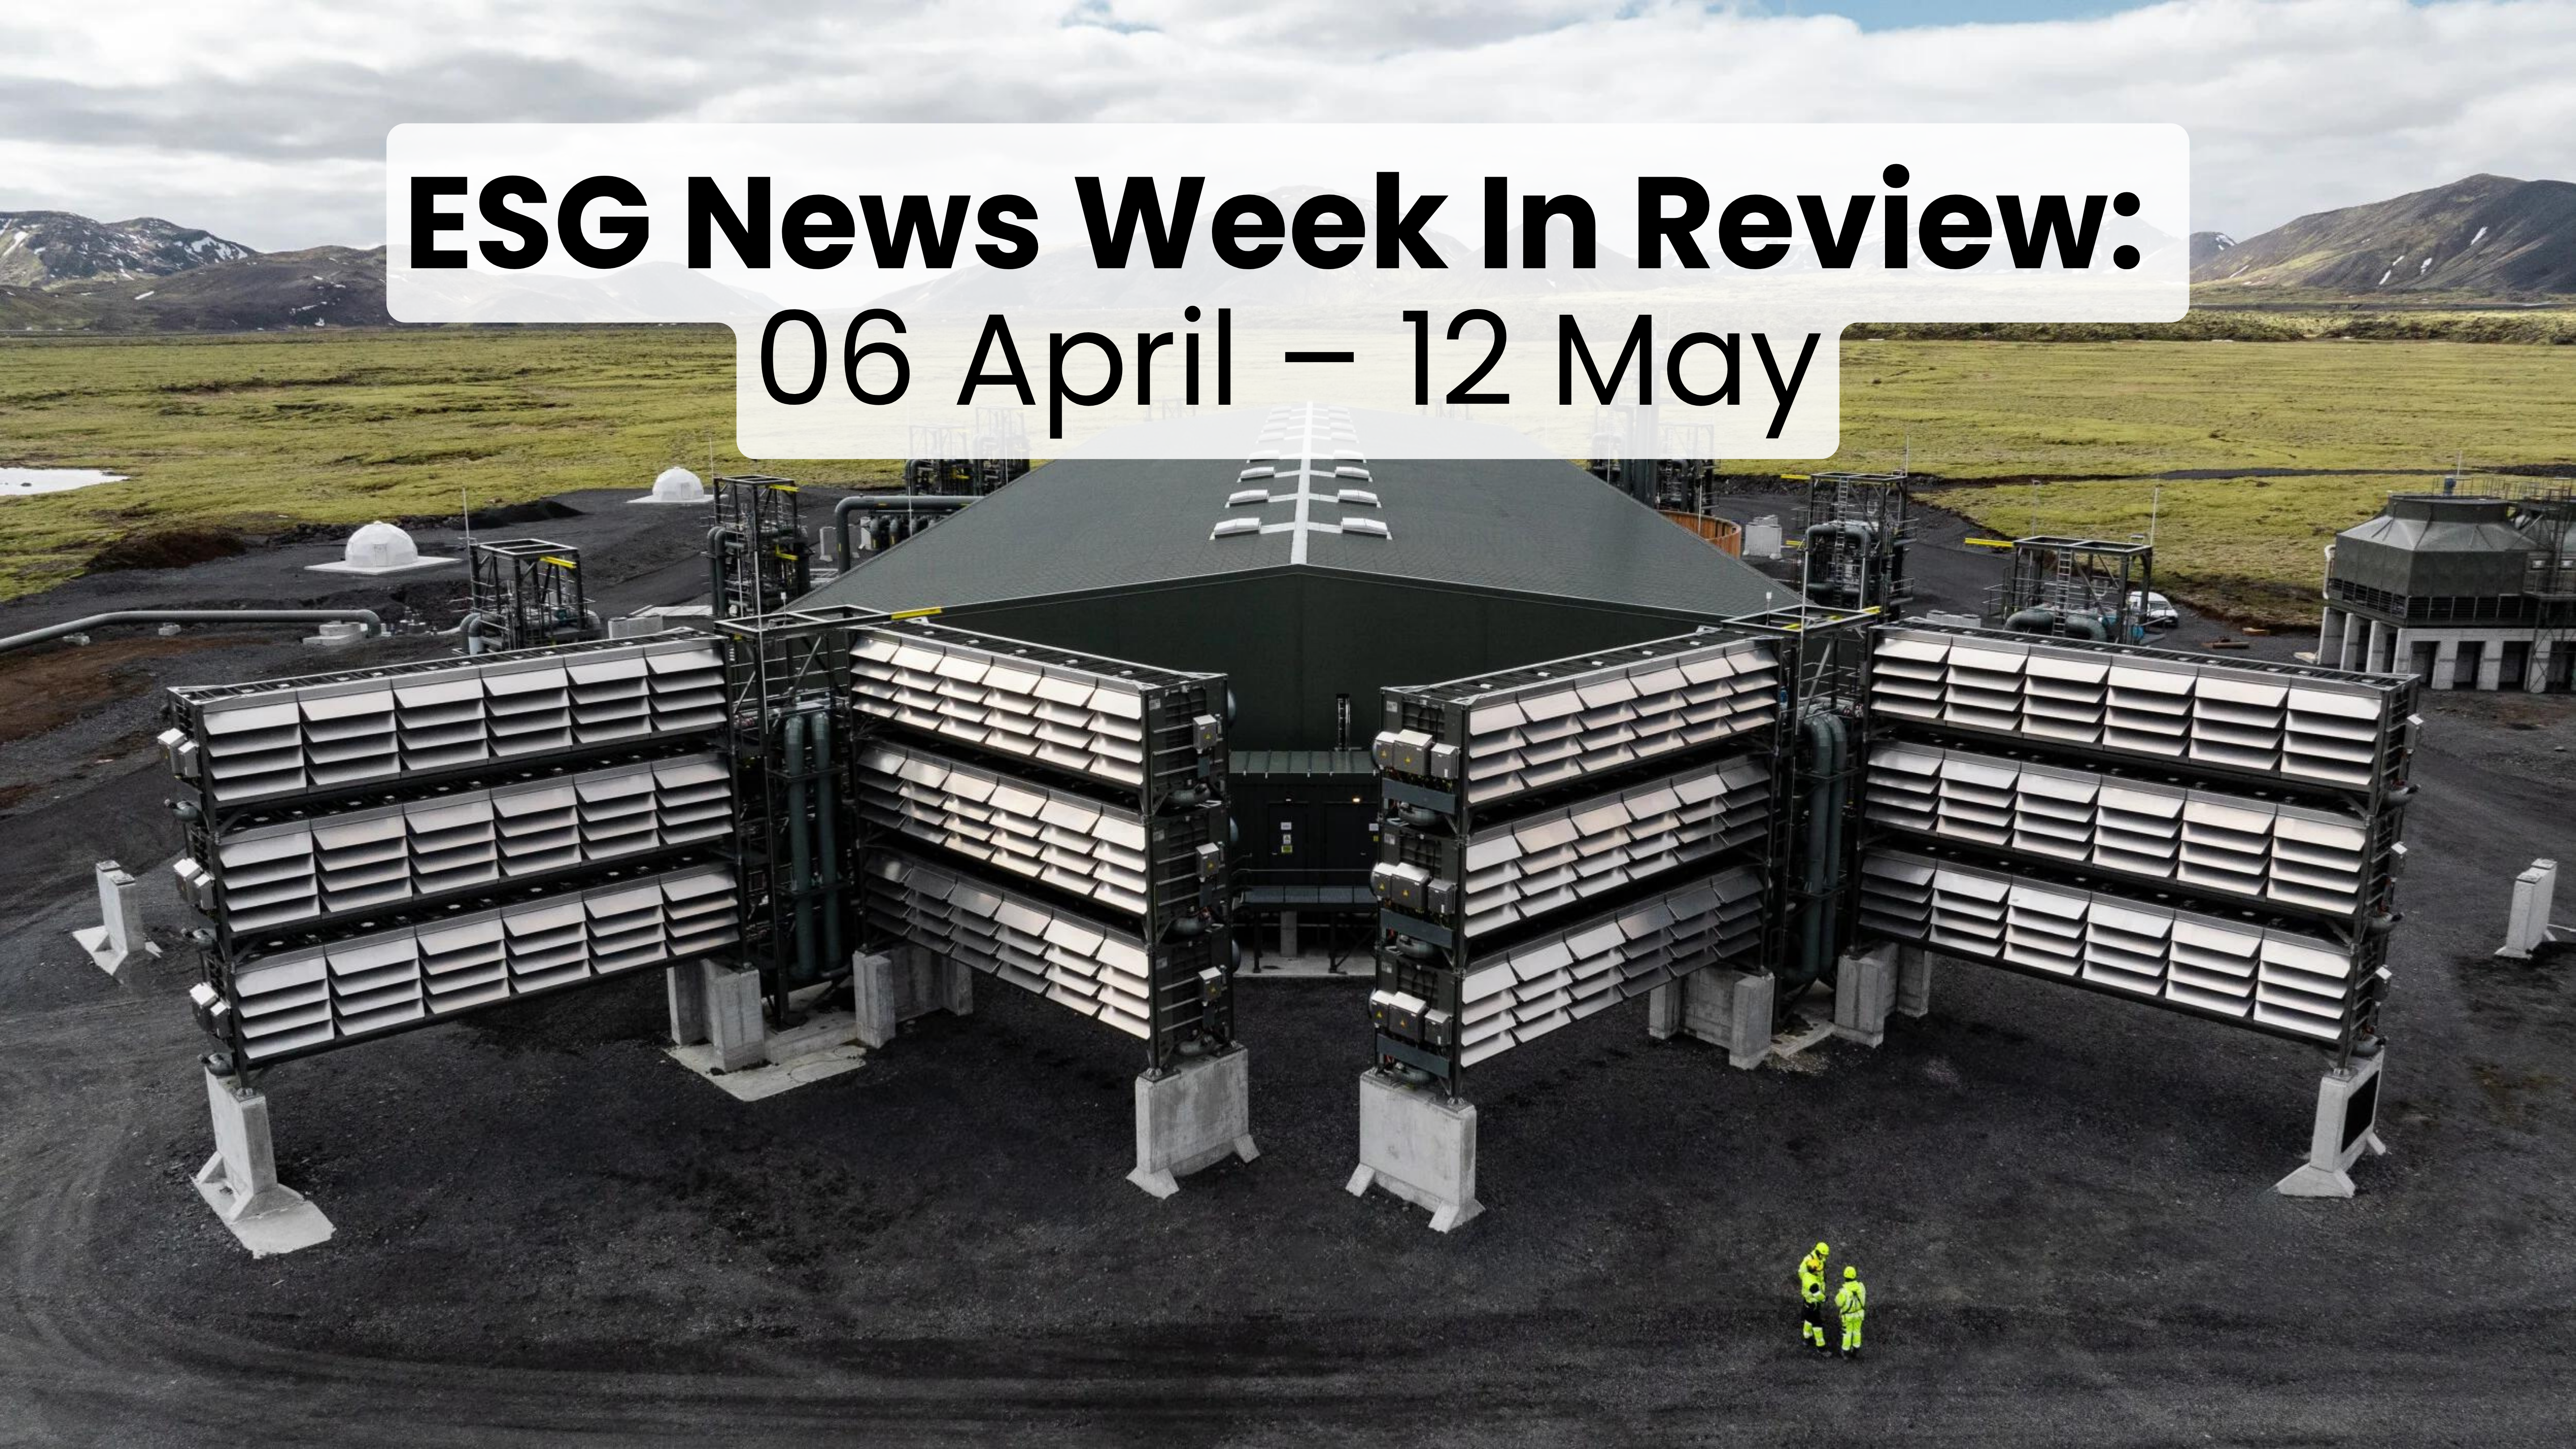 Resumen de la semana de noticias ESG del 06 de abril al 12 de mayo